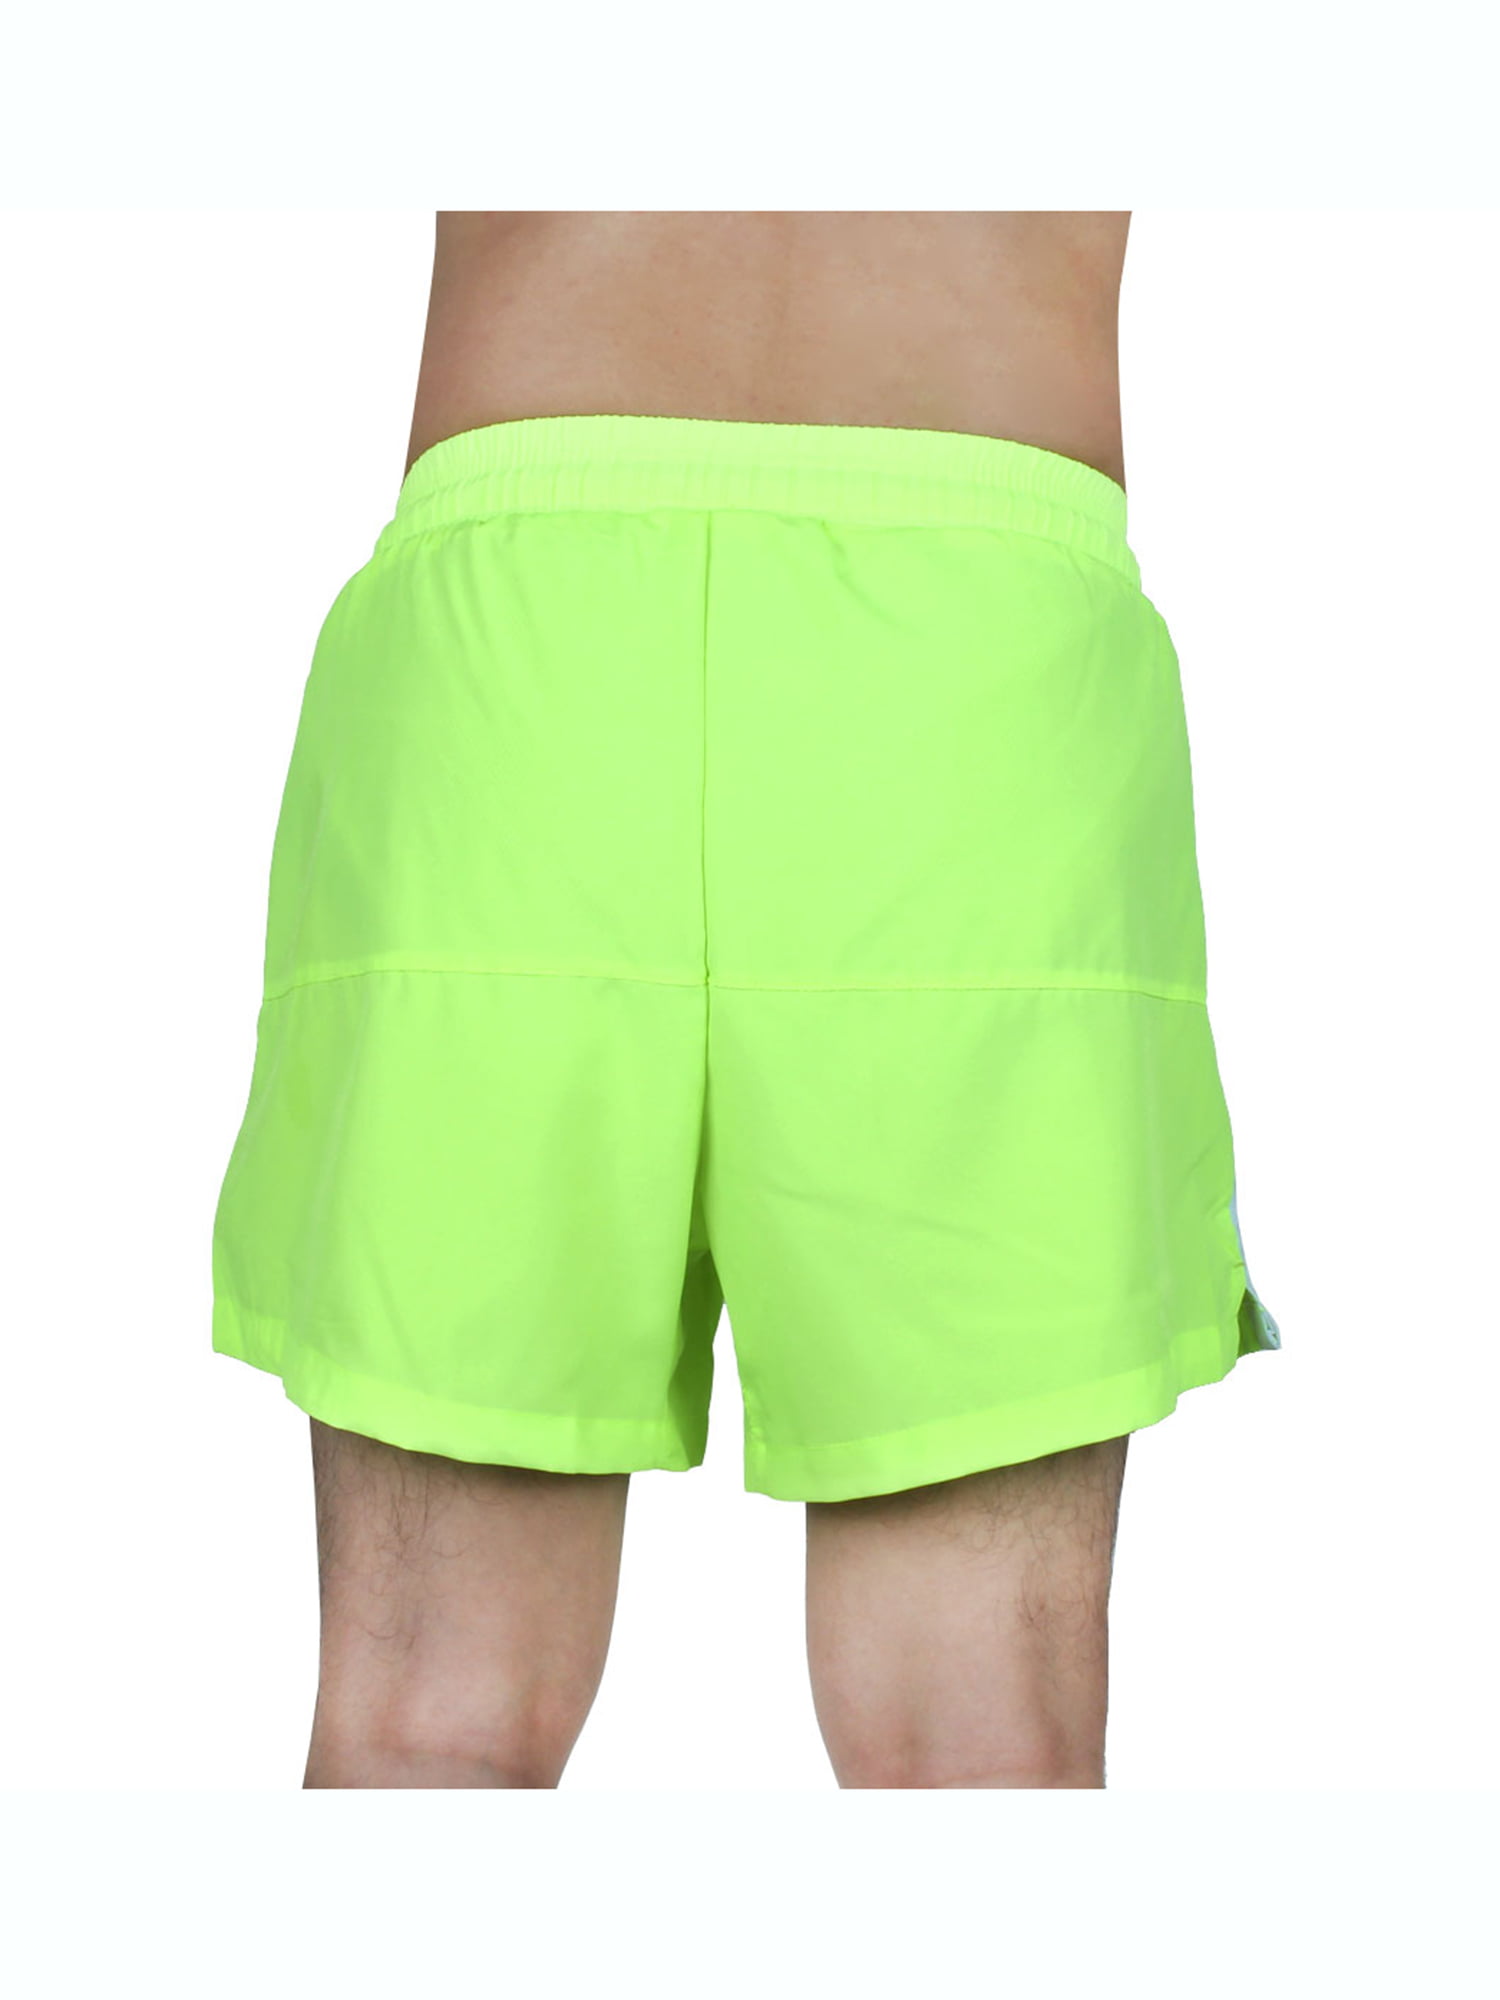 Men Sports Running Summer Beach Surf Board Shorts Pants Fluorescent ...